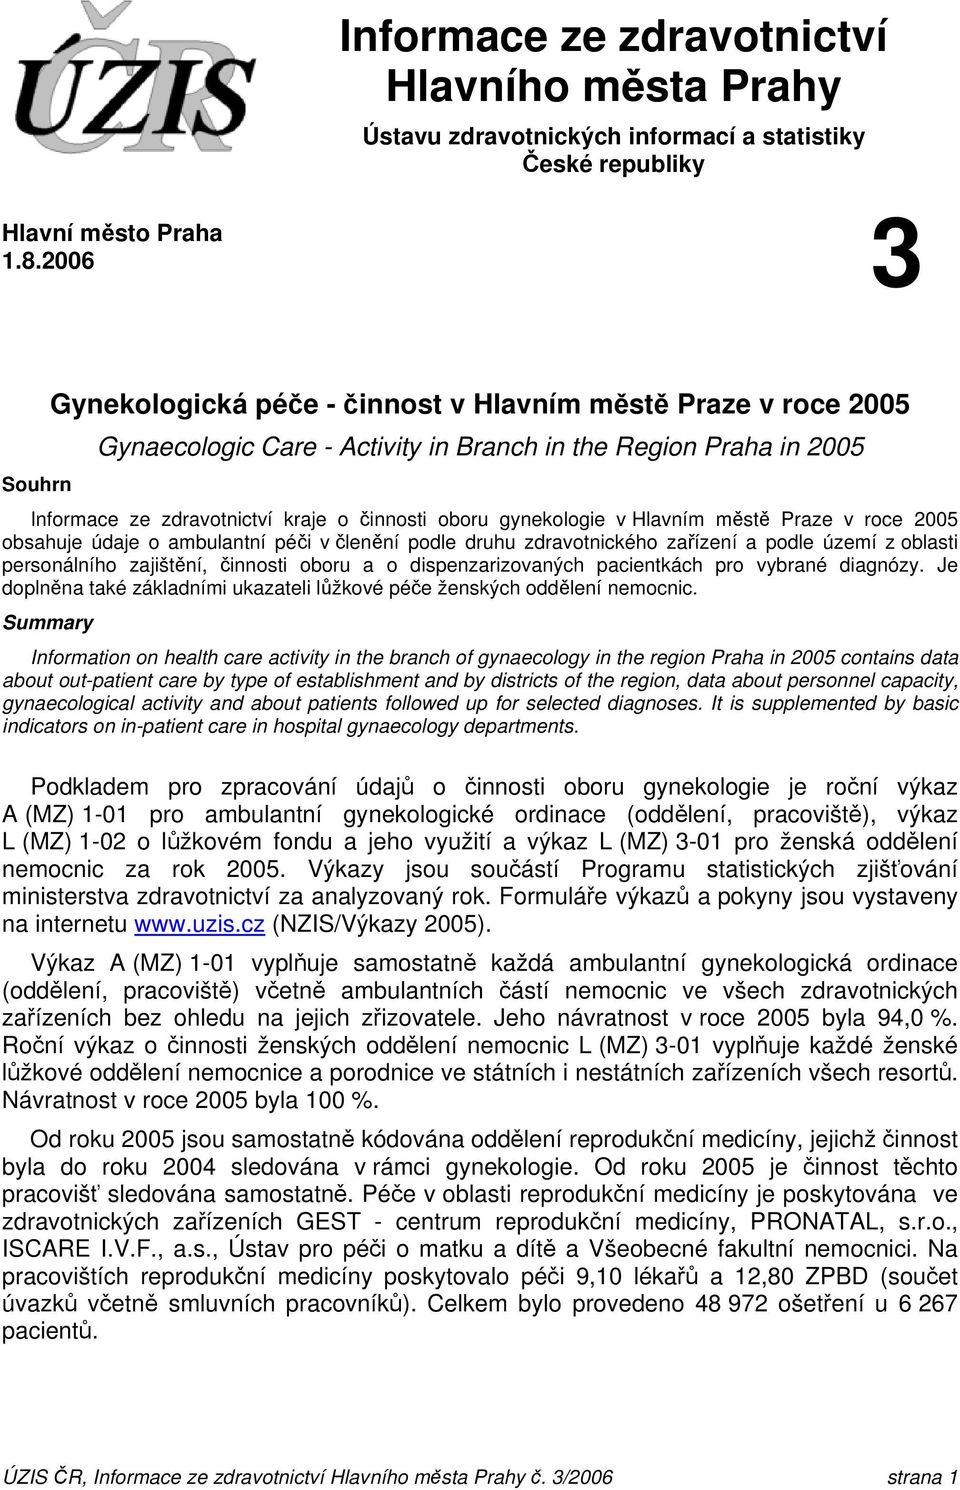 gynekologie v Hlavním městě Praze v roce 2005 obsahuje údaje o ambulantní péči v členění podle druhu zdravotnického zařízení a podle území z oblasti personálního zajištění, činnosti oboru a o